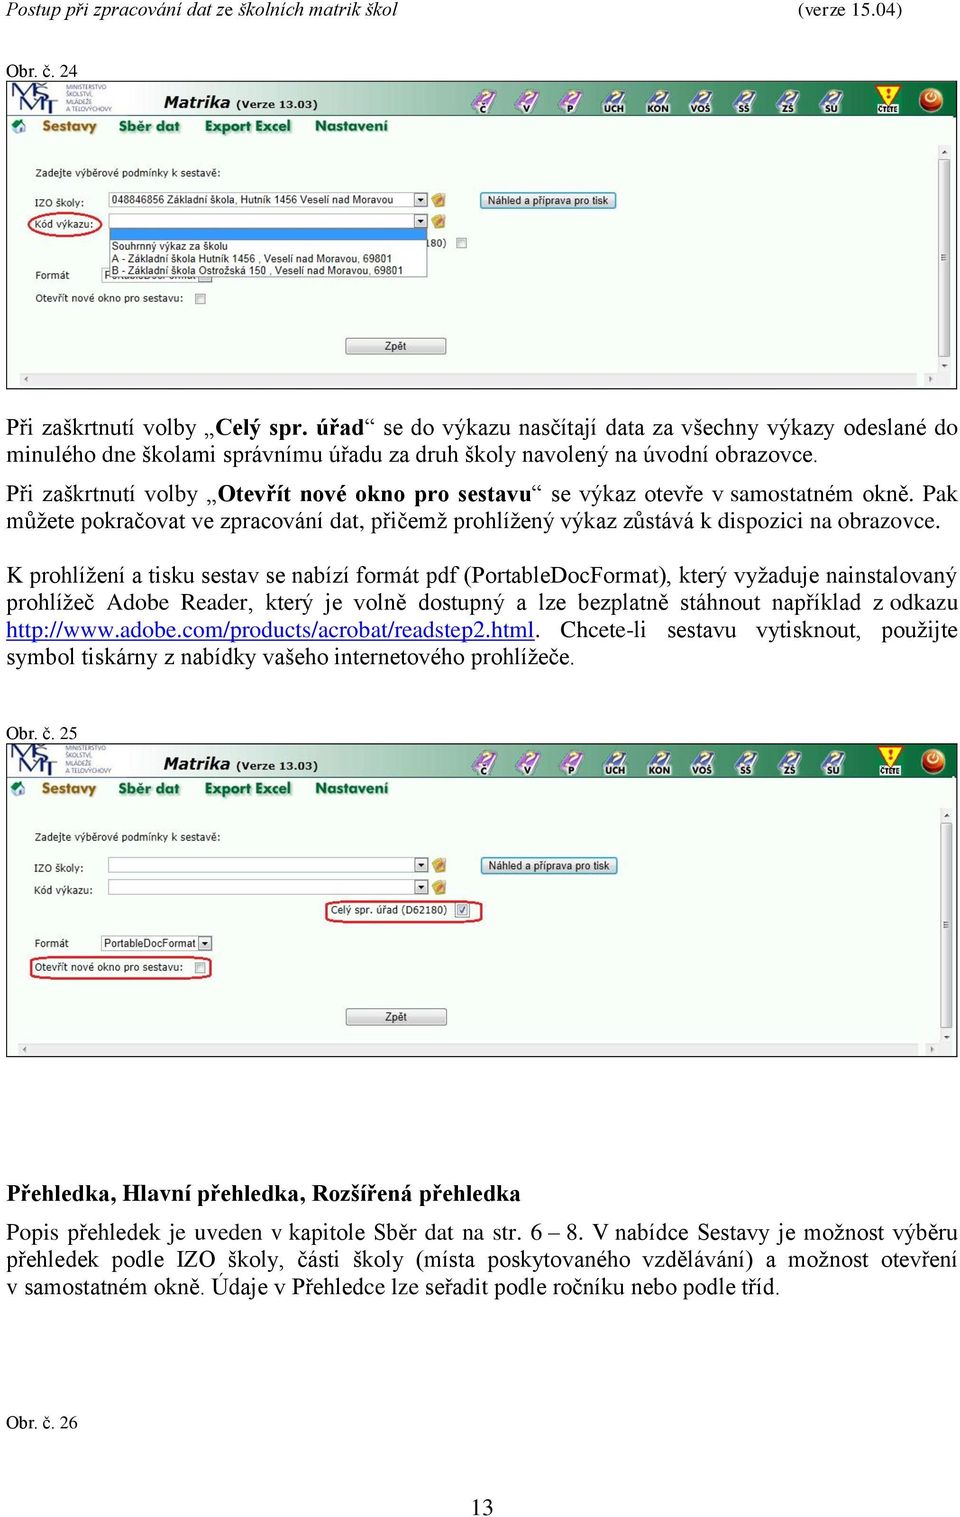 K prohlížení a tisku sestav se nabízí formát pdf (PortableDocFormat), který vyžaduje nainstalovaný prohlížeč Adobe Reader, který je volně dostupný a lze bezplatně stáhnout například z odkazu